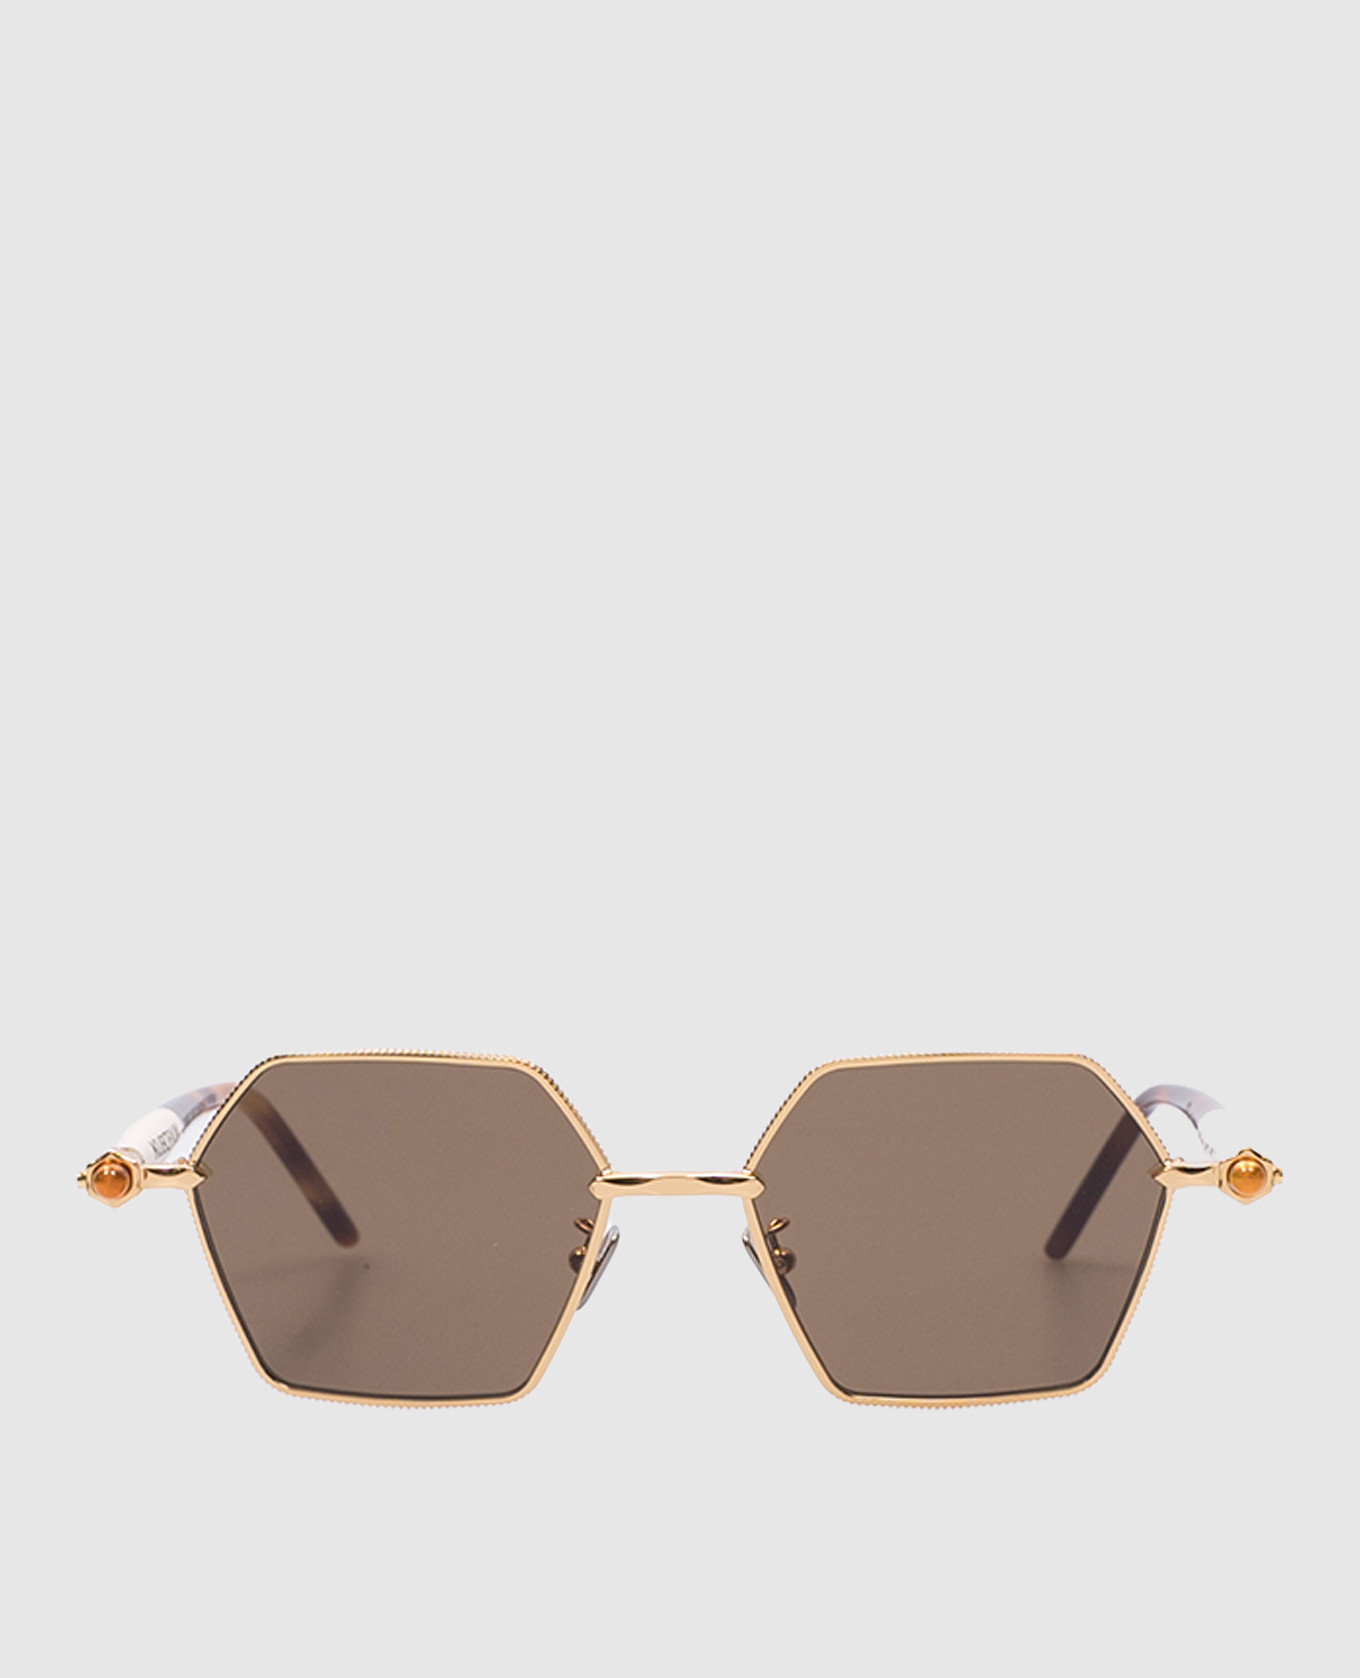 

Золотые очки P71 с эффектом черепахового панциря, Золотистый, Солнцезащитные очки